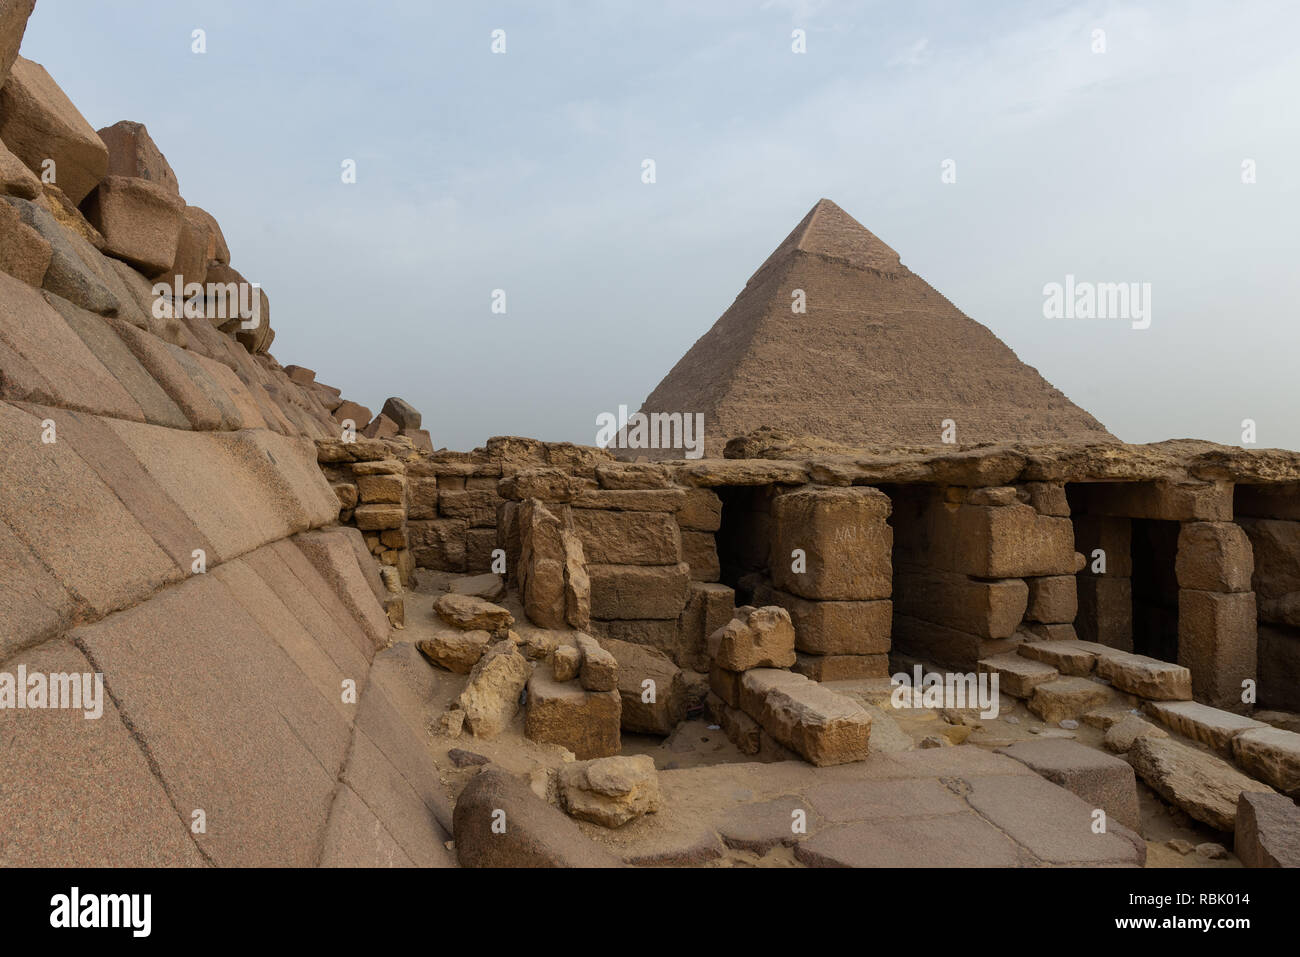 Vue sur la pyramide de Khafré avec le temple funéraire de la pyramide de Menkaourê au premier plan. La pyramide de Menkaourê est la plus petite de la th Banque D'Images